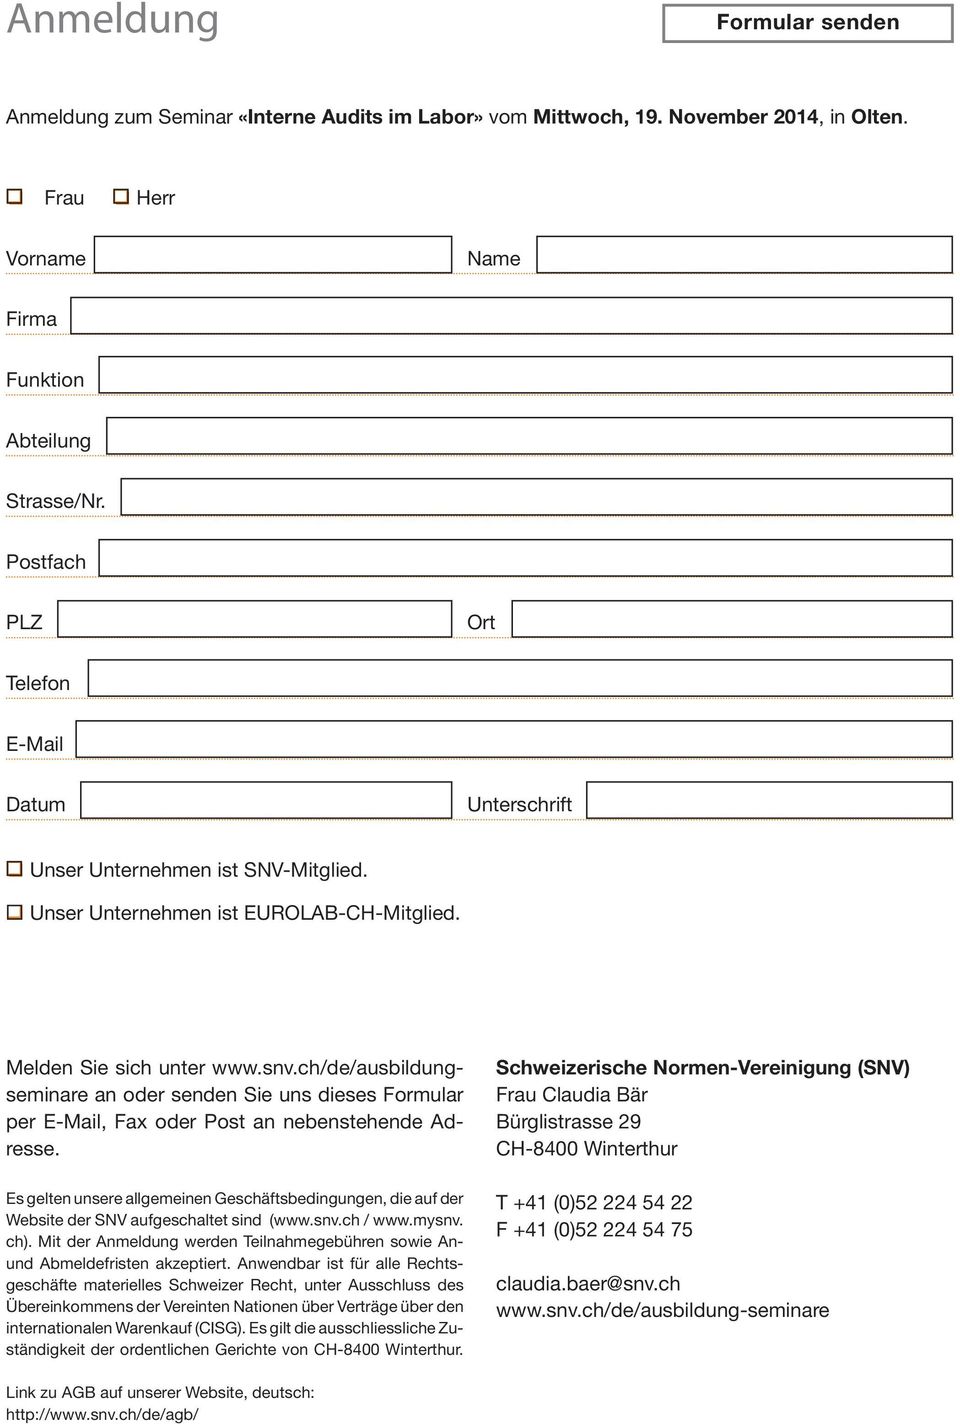 ch/de/ausbildungseminare an oder senden Sie uns dieses Formular per E-Mail, Fax oder Post an nebenstehende Adresse.